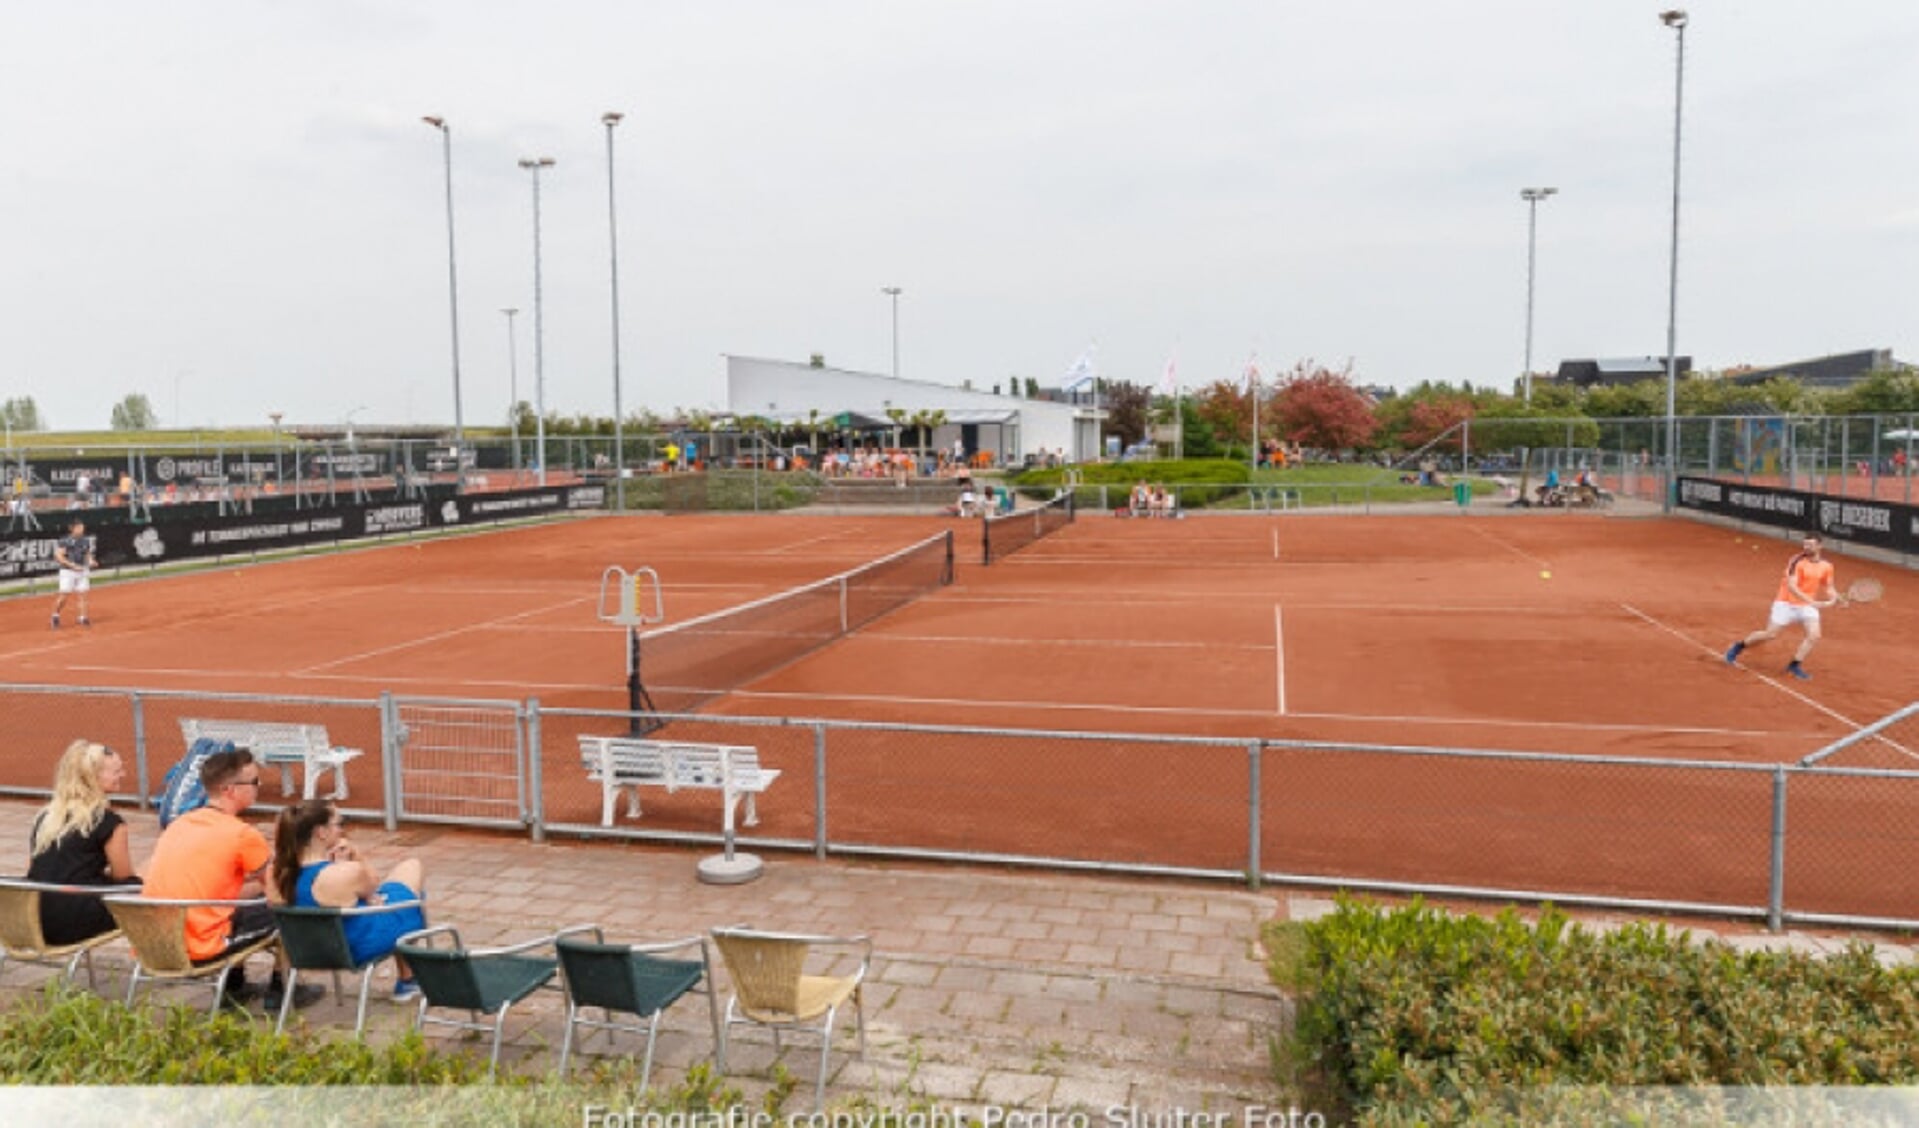  Het tennispark van TC '91 met op de achtergrond de kantine.